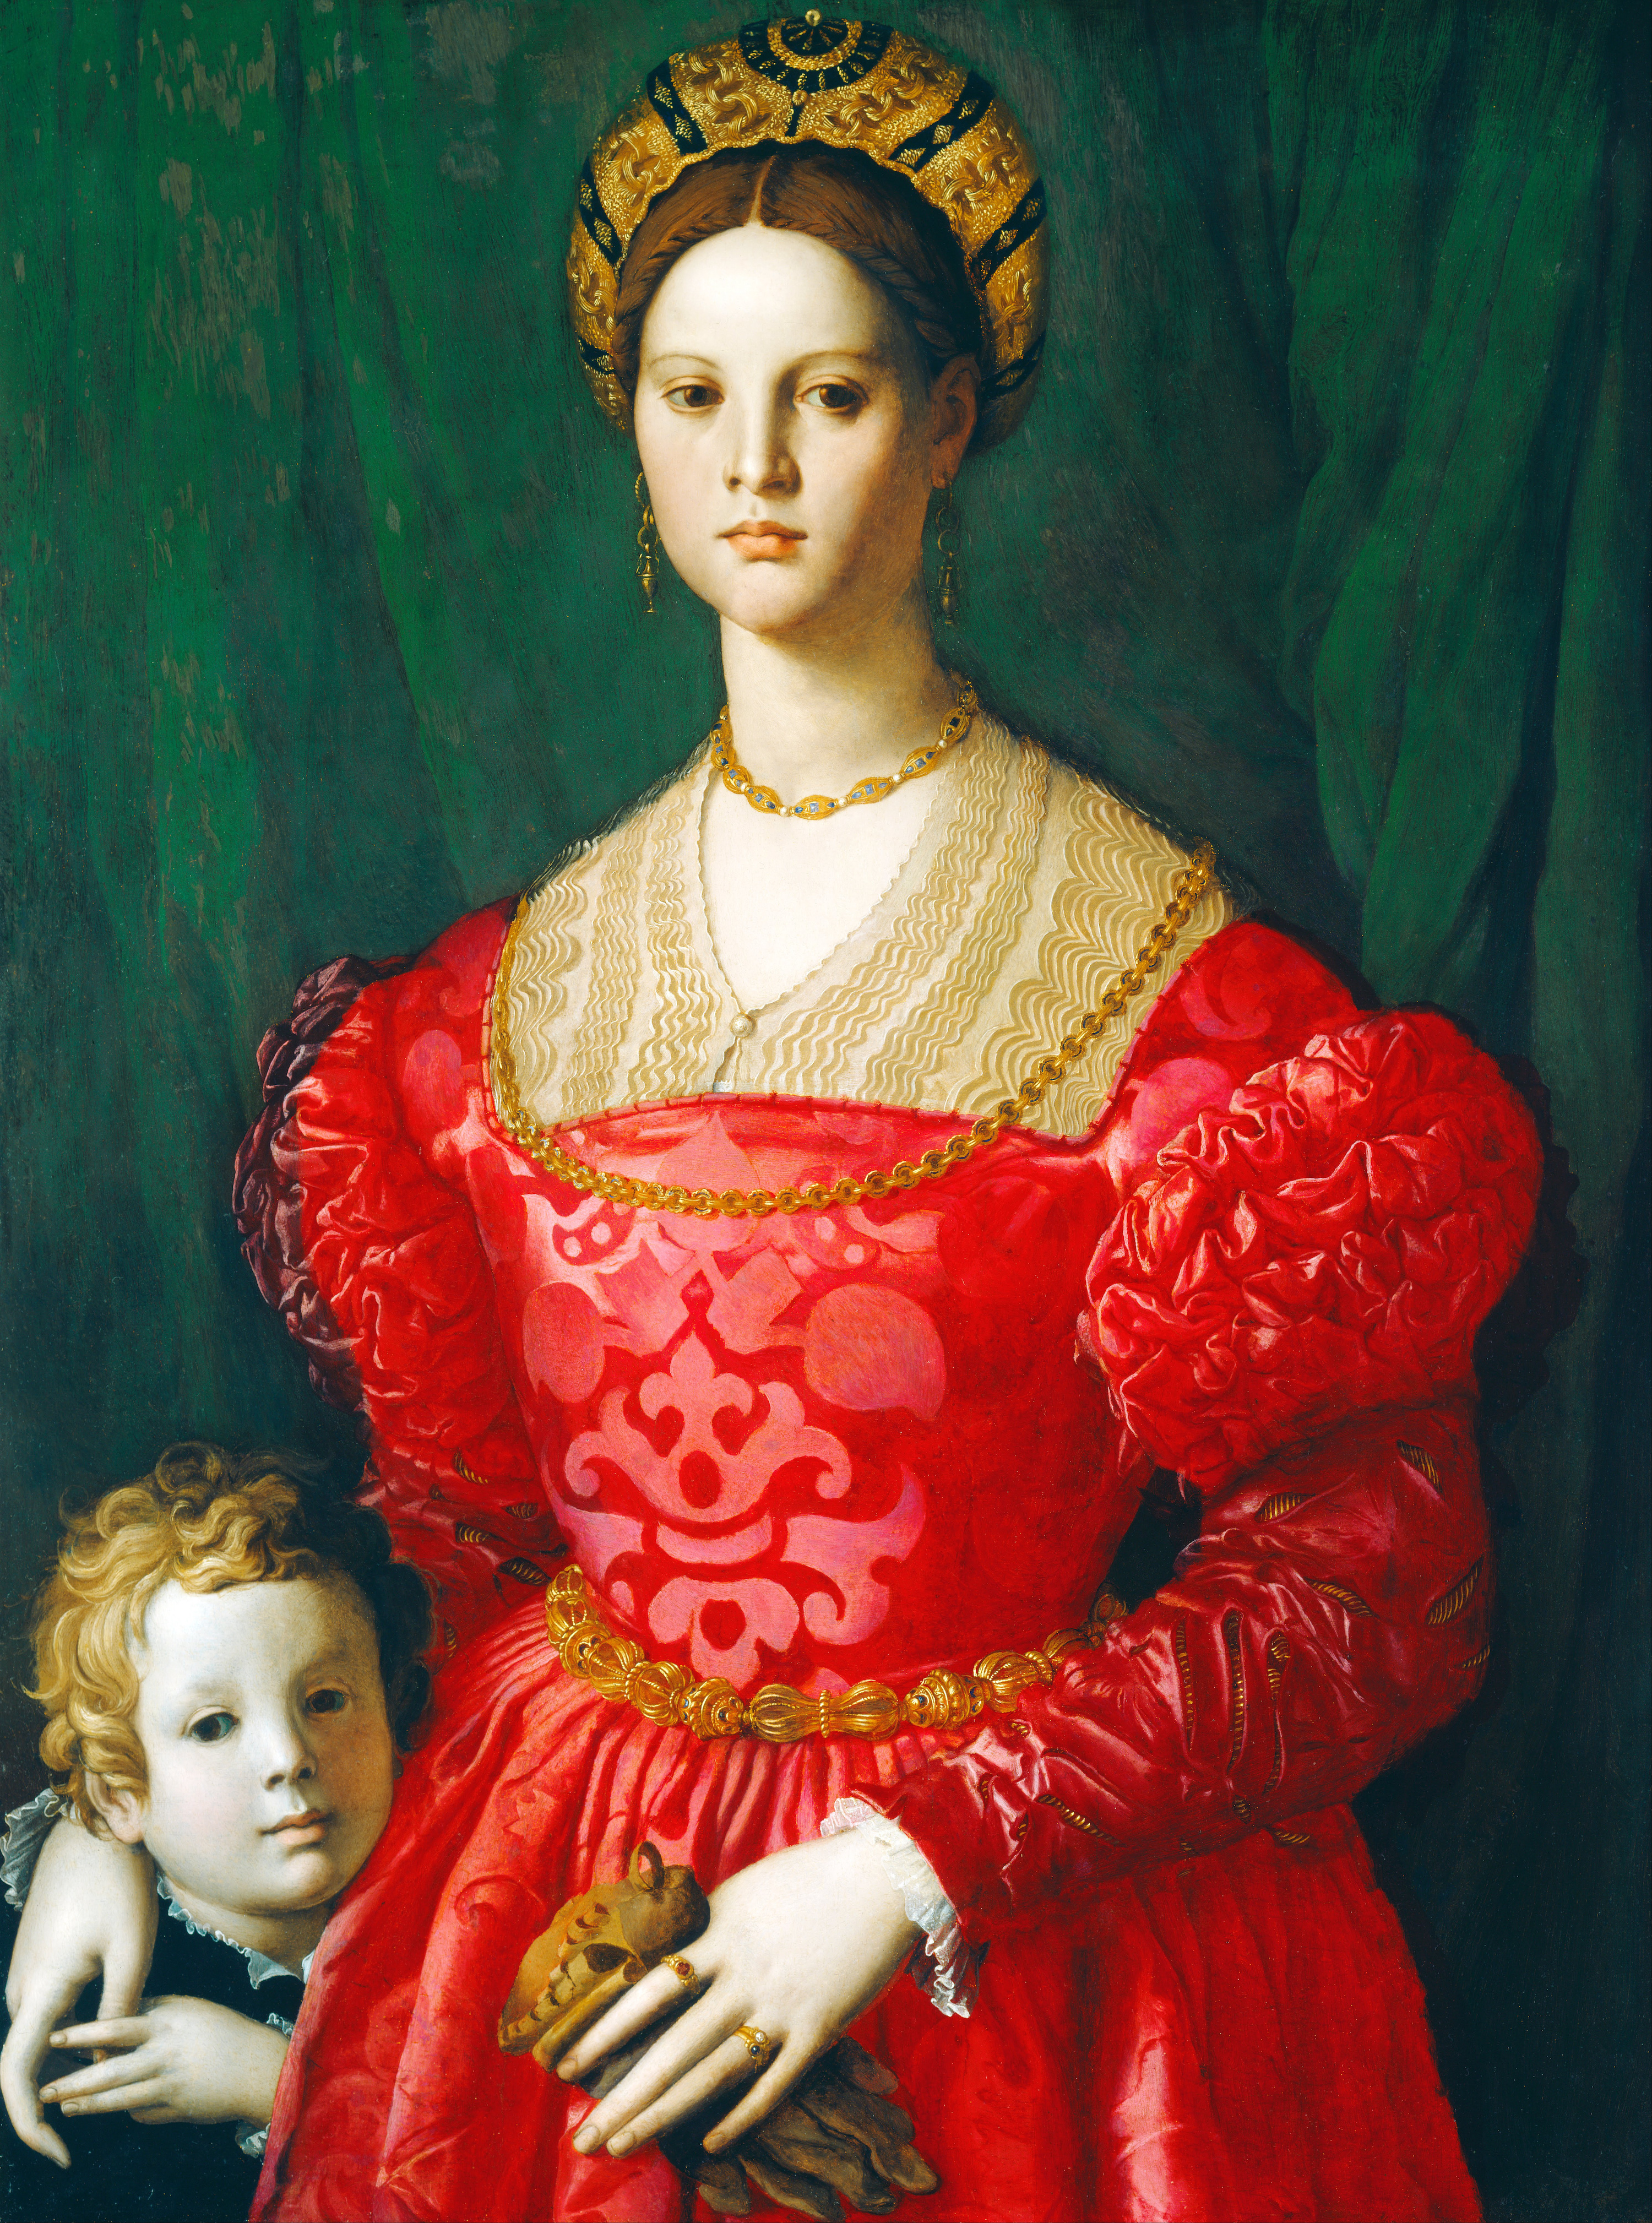 젊은 여성과 어린 소년 (A Young Woman and Her Little Boy) by Agnolo Bronzino - c. 1540 - 76 x 99.5 cm 